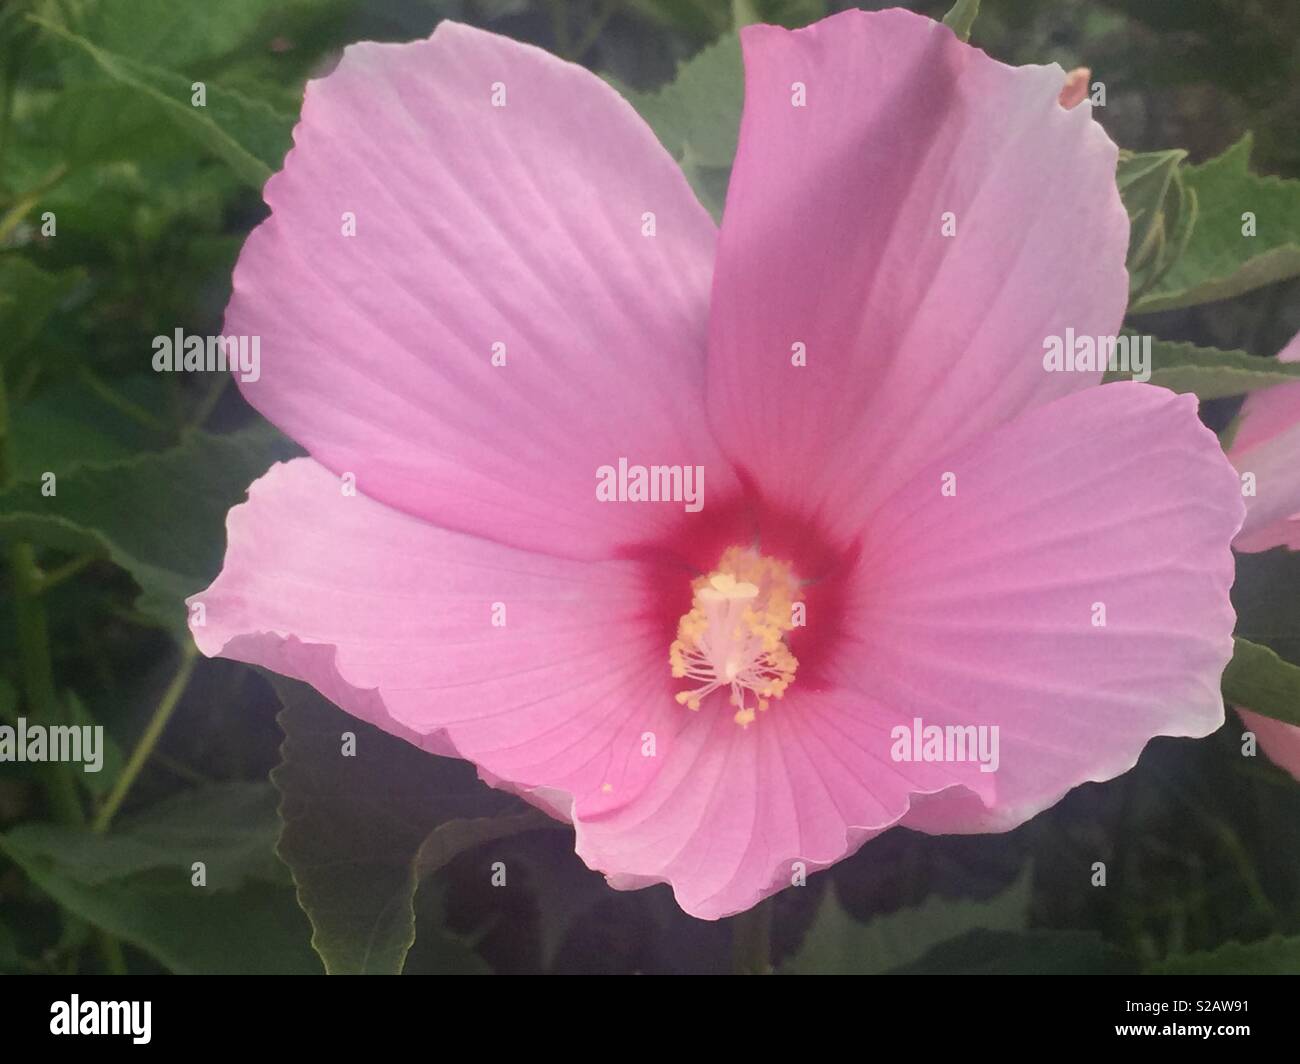 La cabeza de la flor rosa con abundantes estambres. Foto de stock